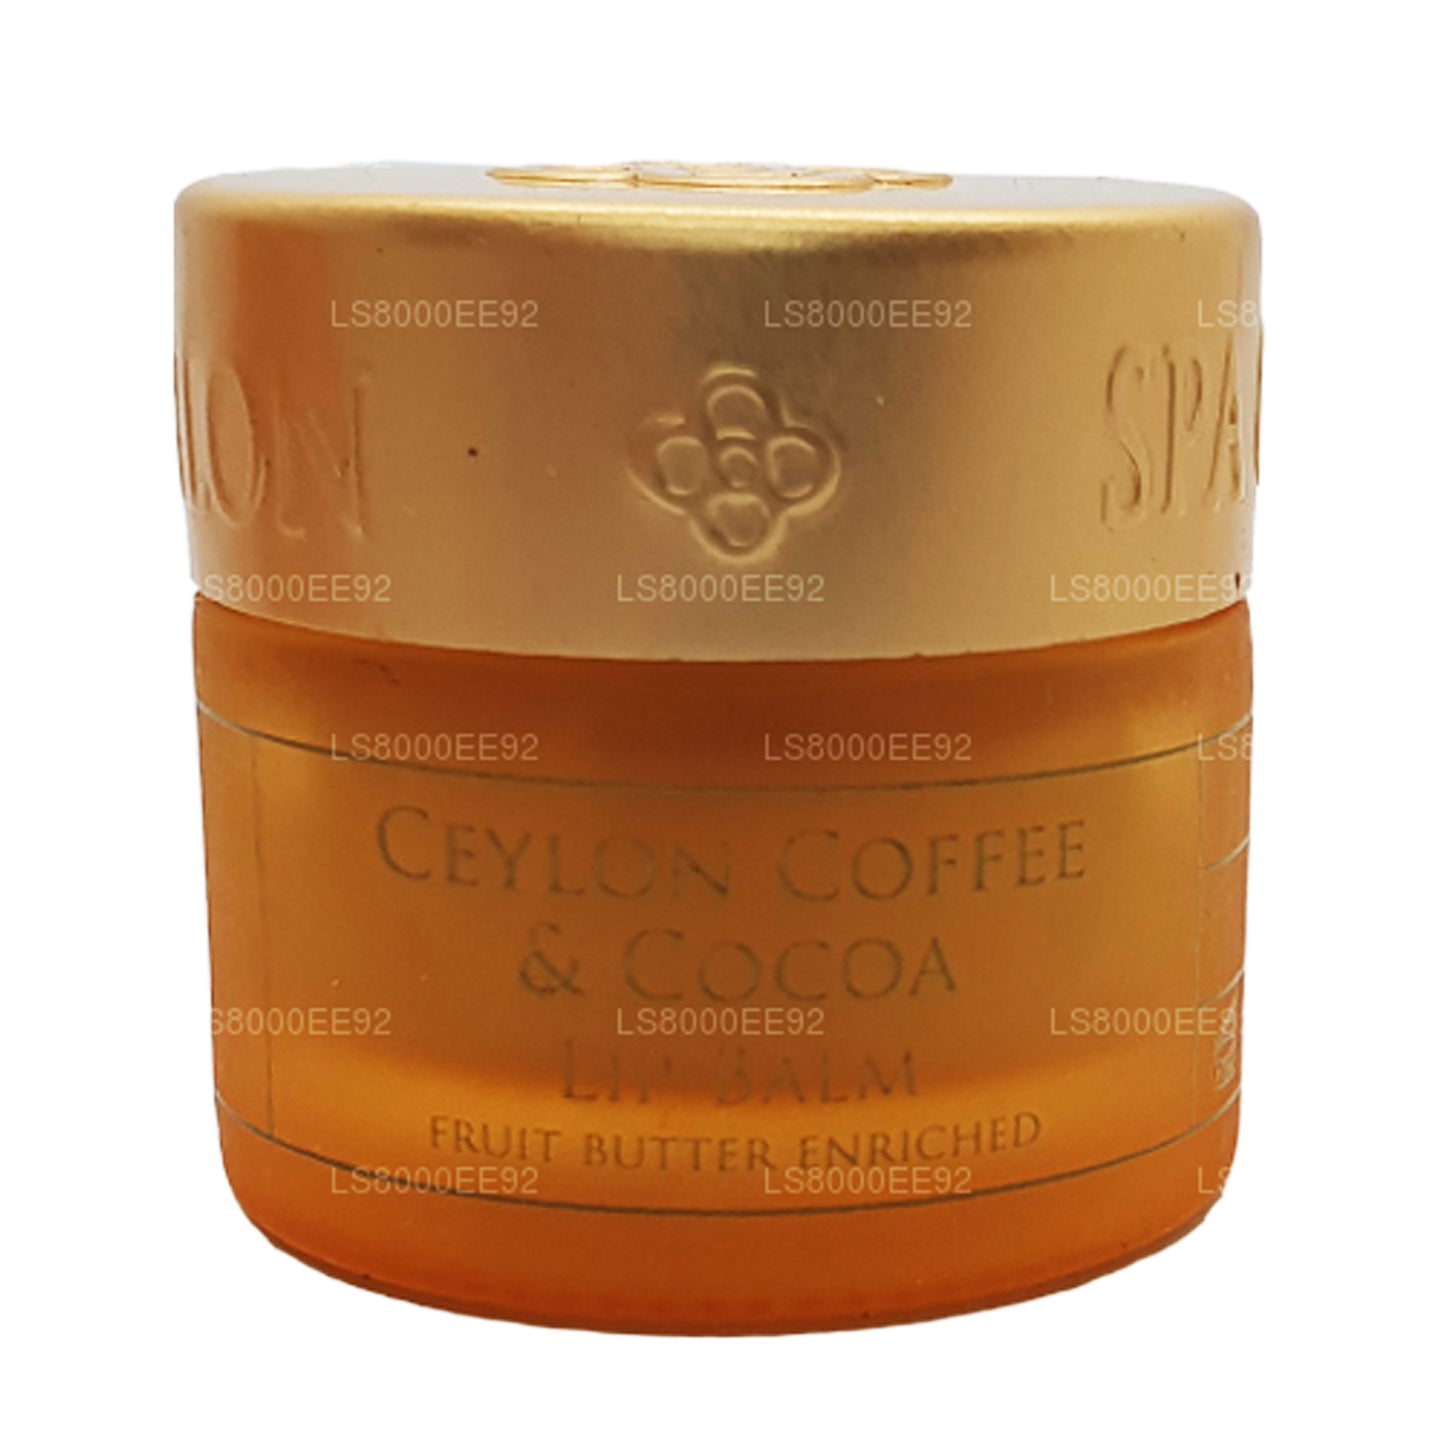 Spa Ceylon Ceylon Lippenbalsam mit Kaffee und Kakao (10 g)